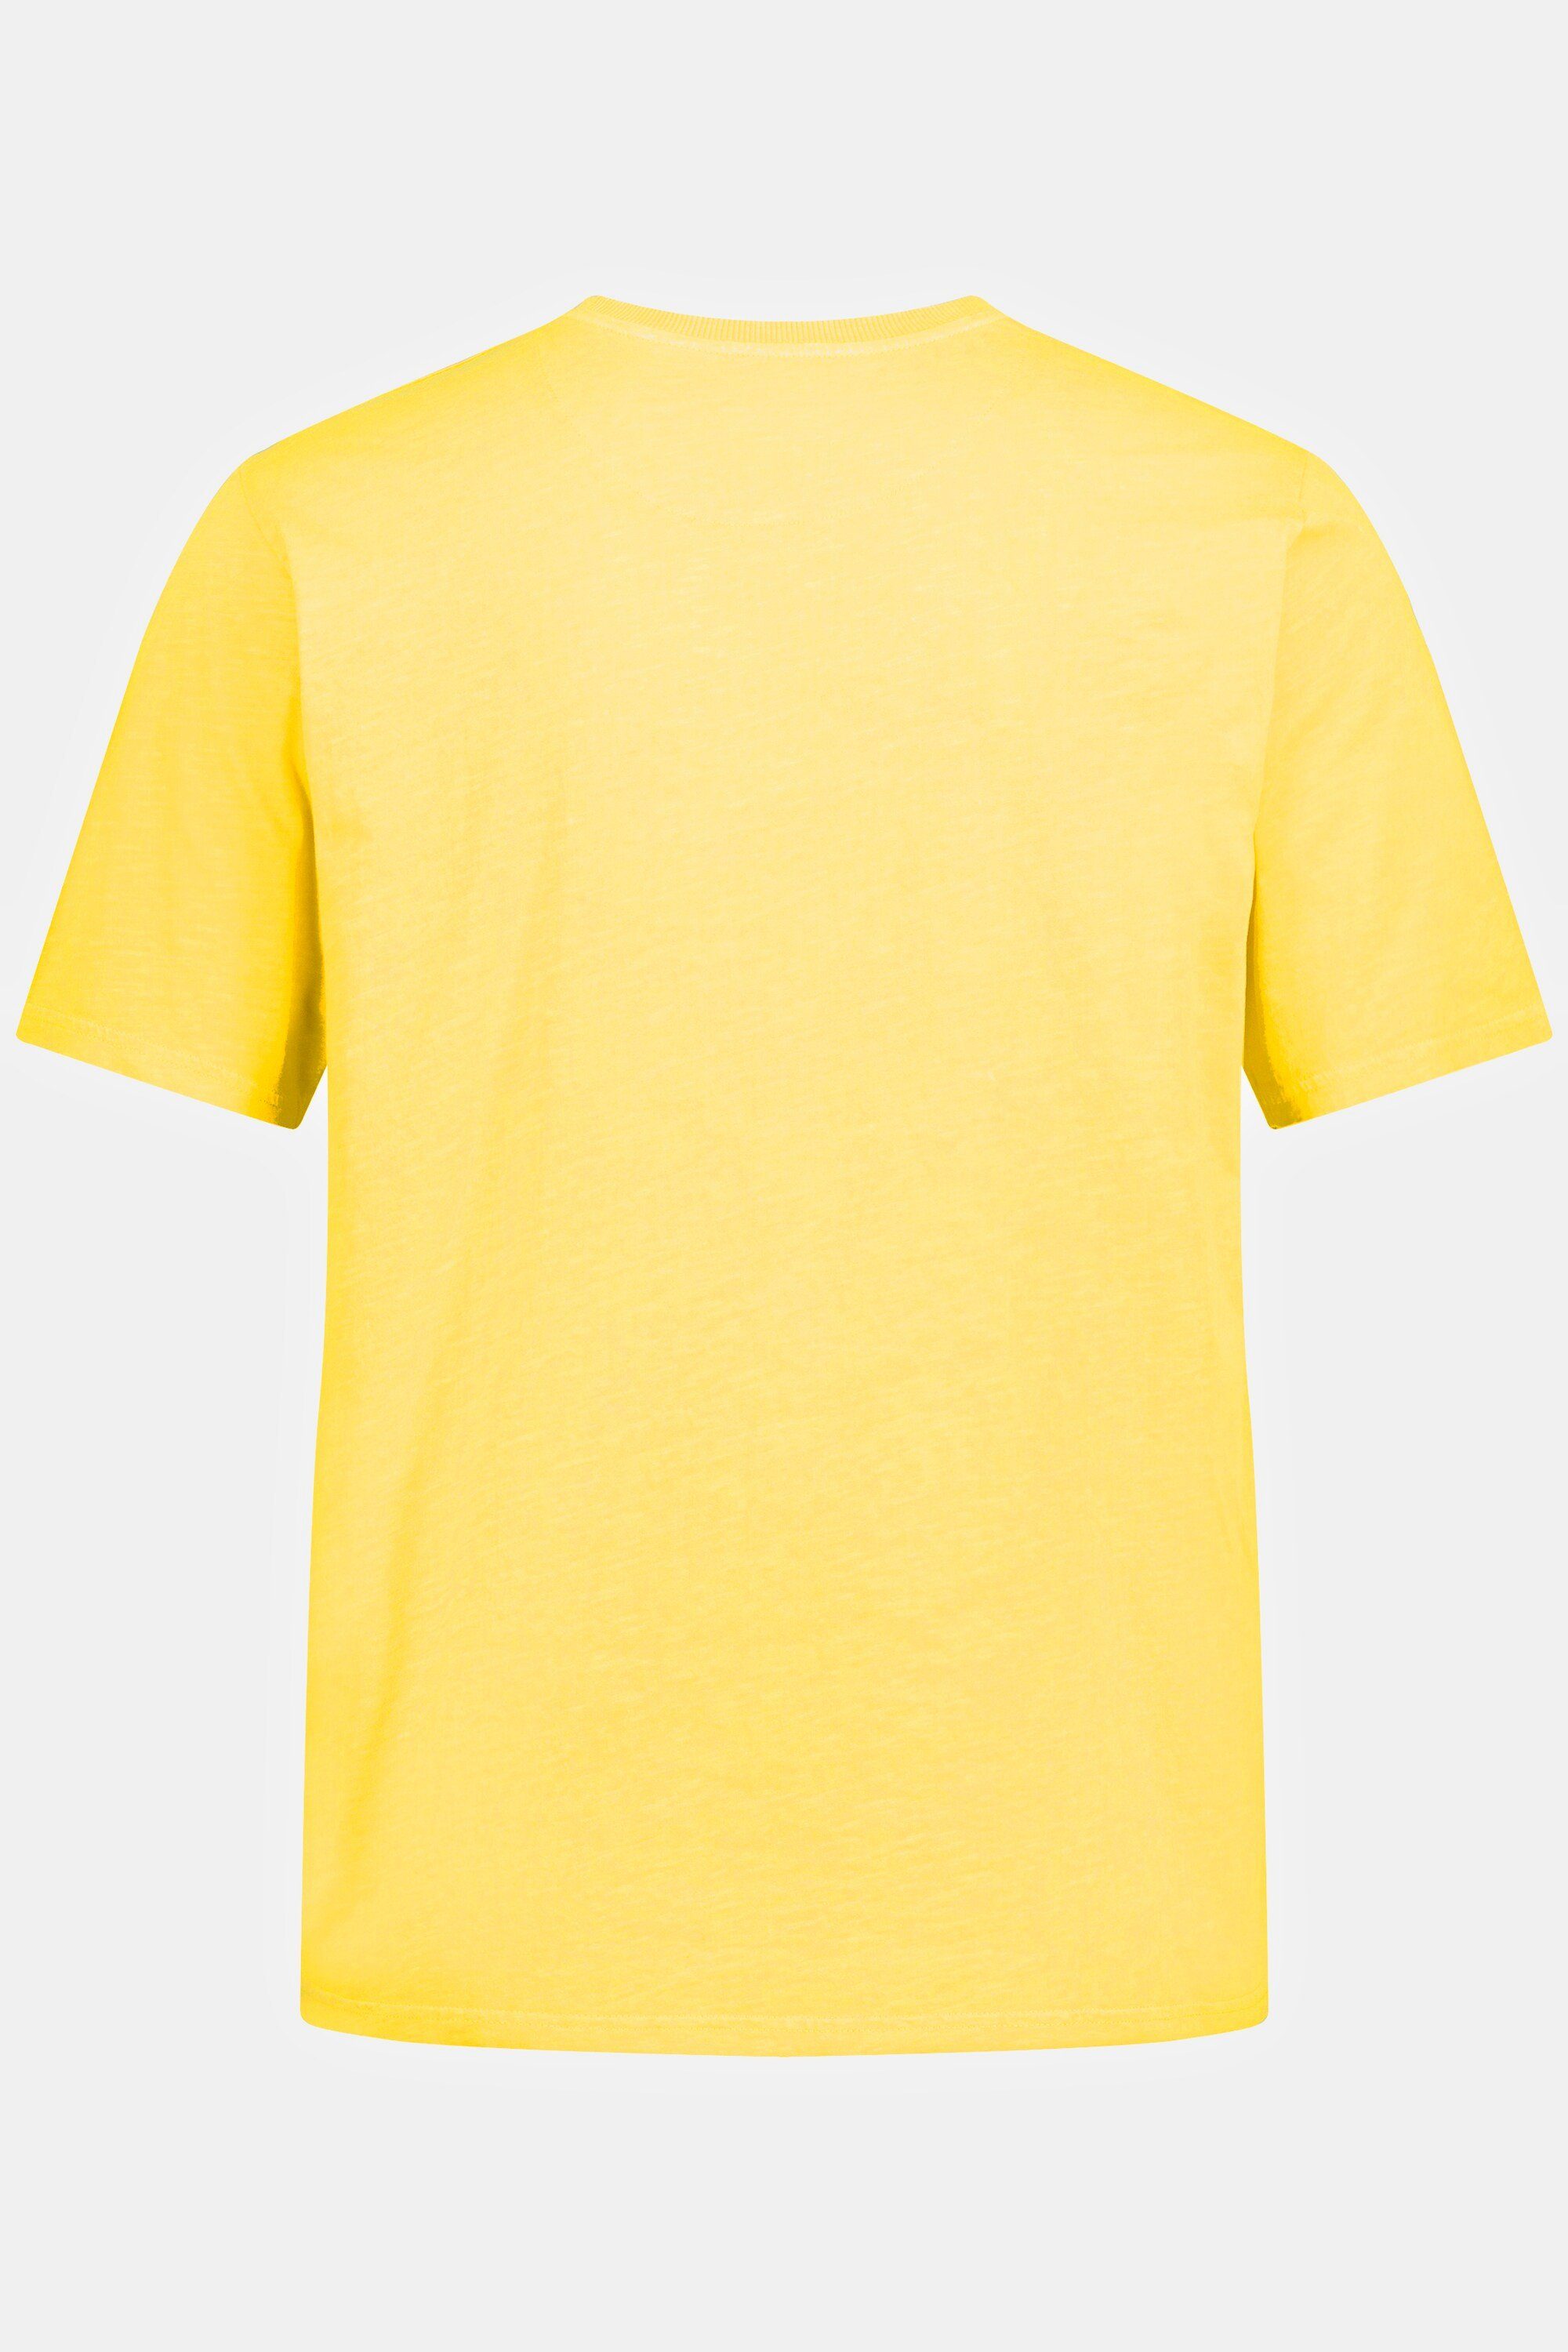 T-Shirt T-Shirt Halbarm Brusttasche hellgelb Rundhals JP1880